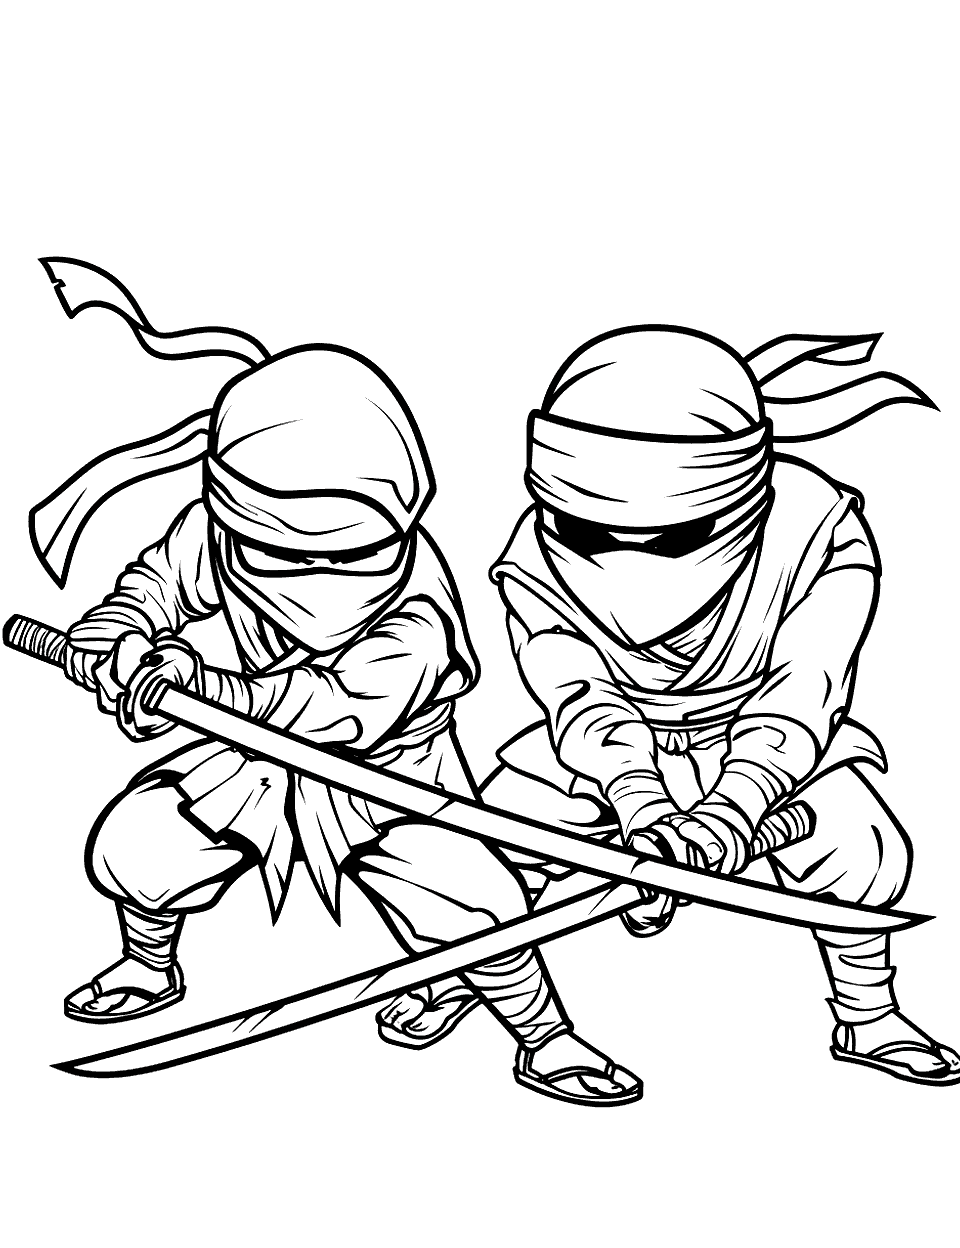 Anime Ninja Duel Coloring Page - Two anime-style ninjas facing off.